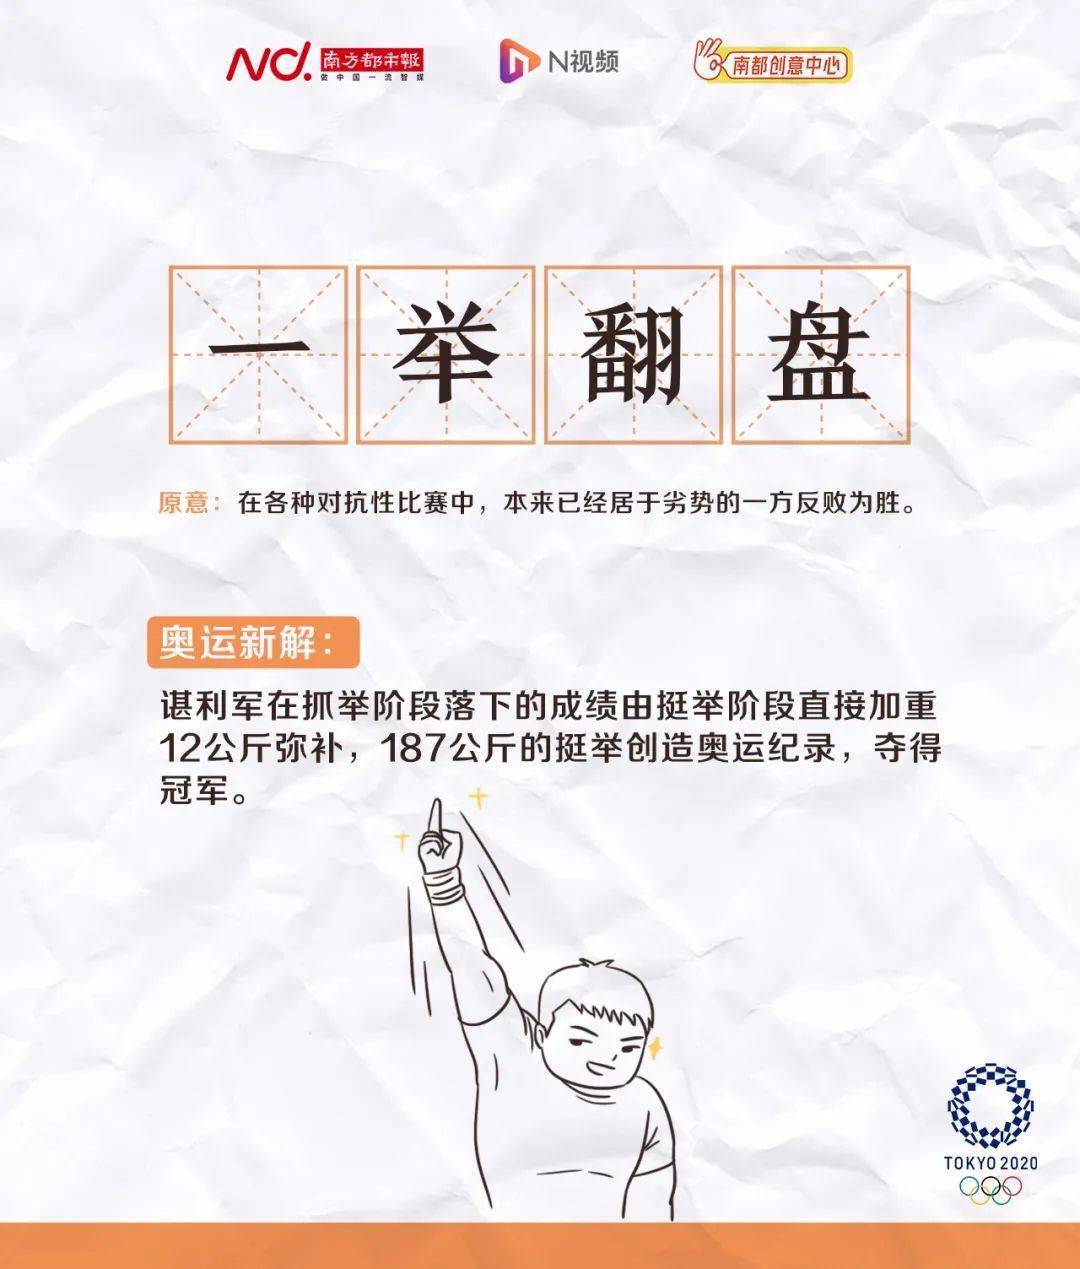 吴京|吴京运动会，应吹思停……看完笑疯了